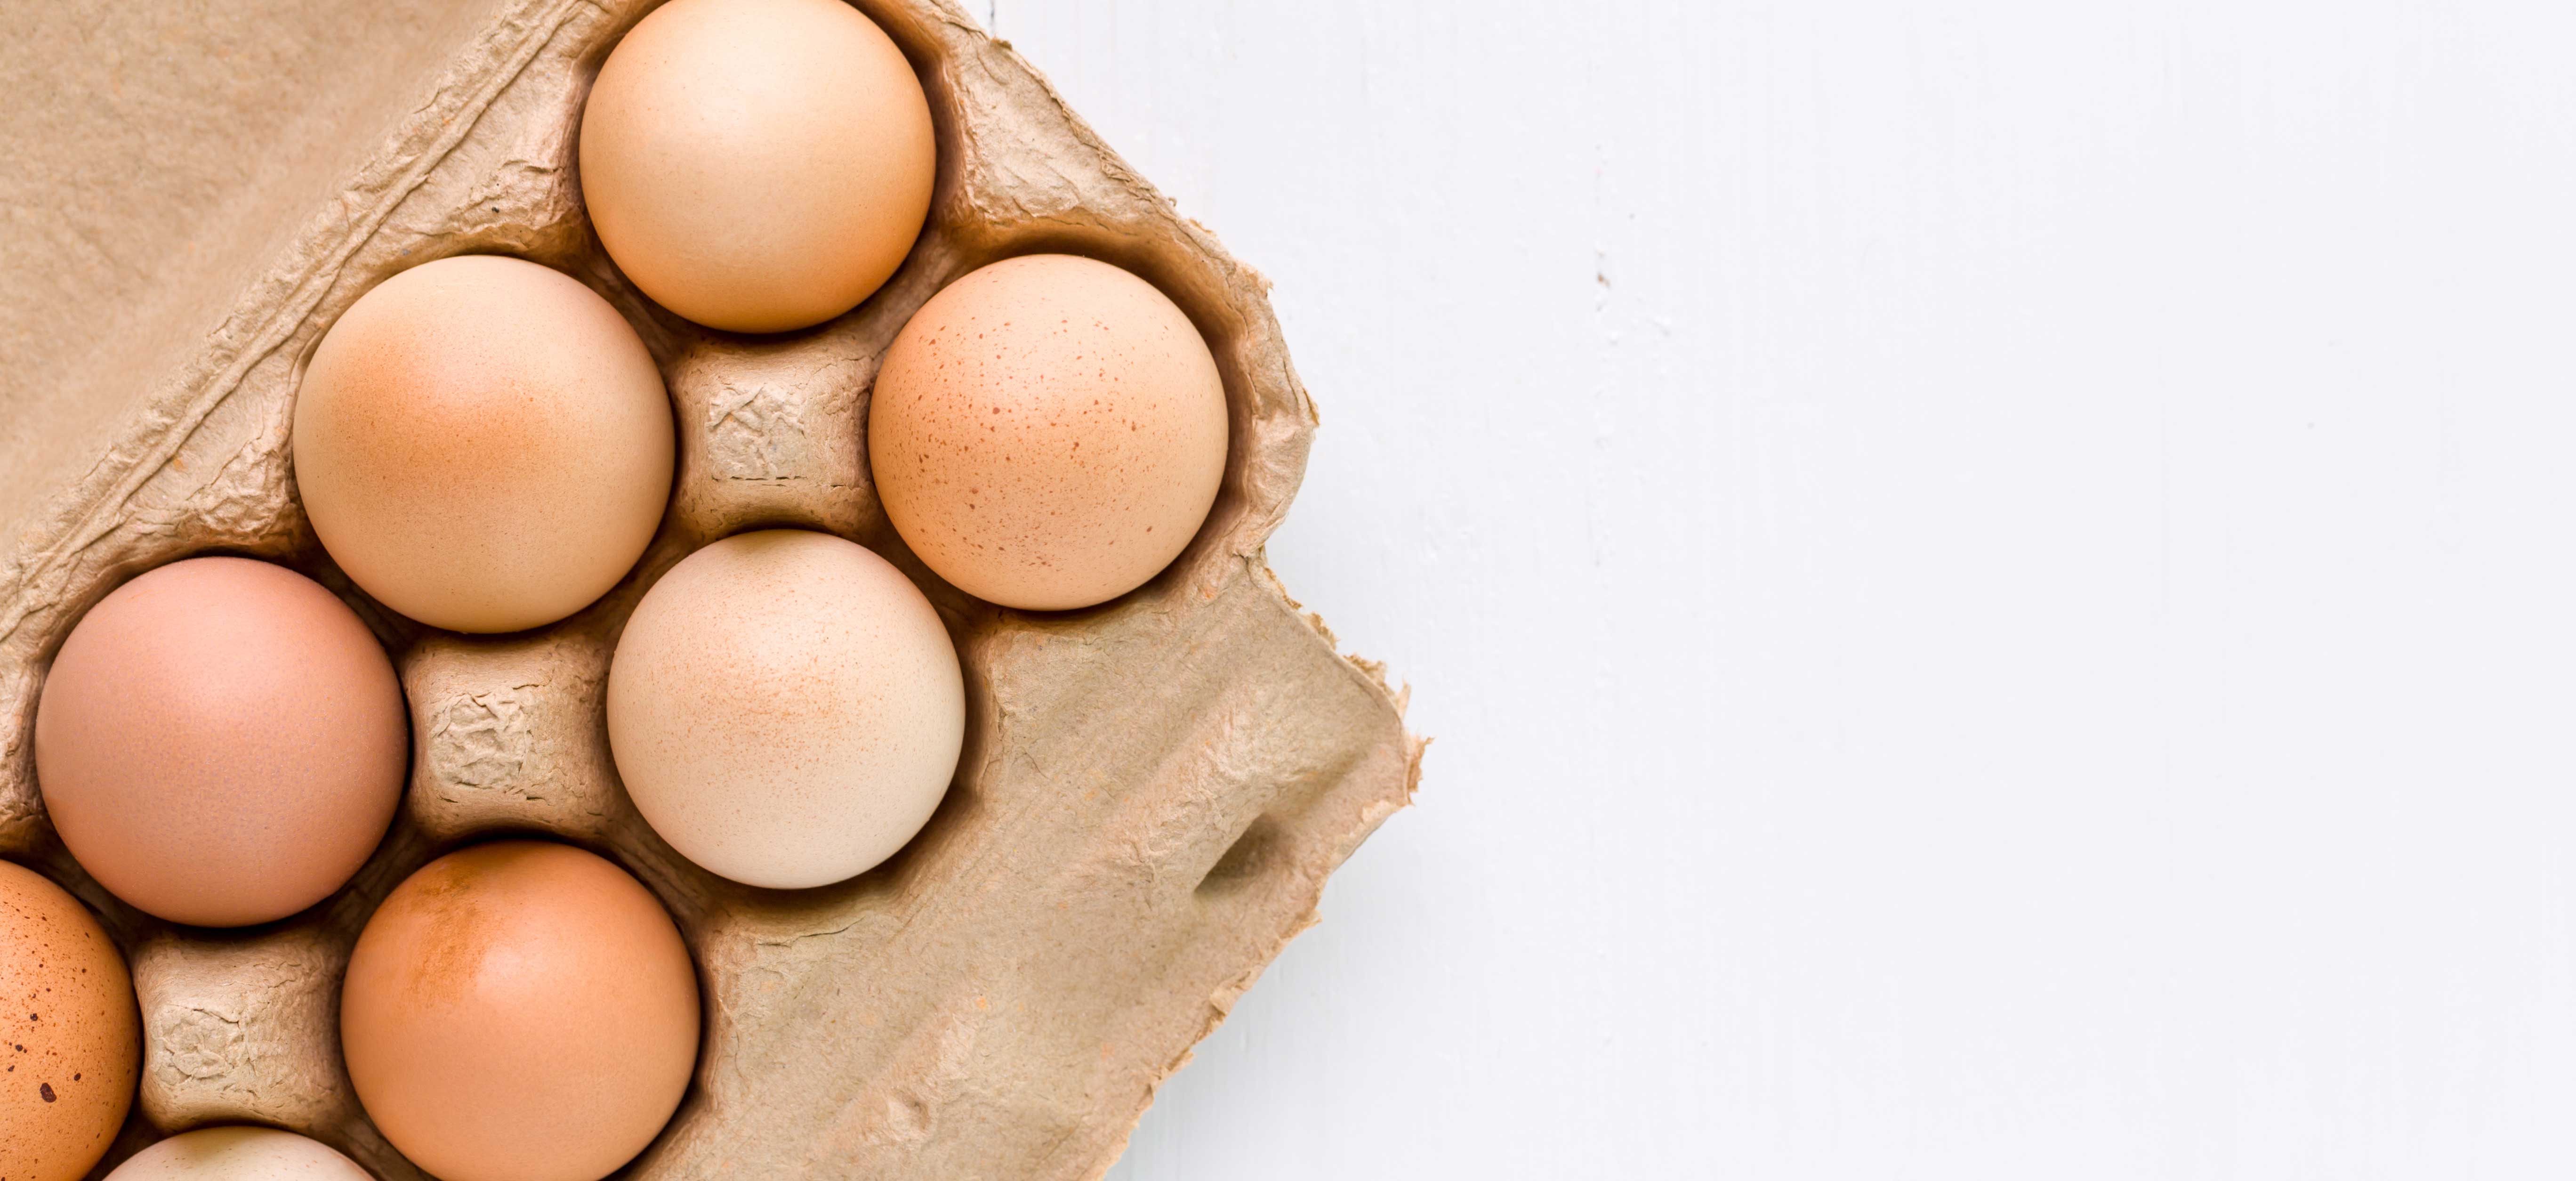 Passen eieren in het Pioppi-dieet?